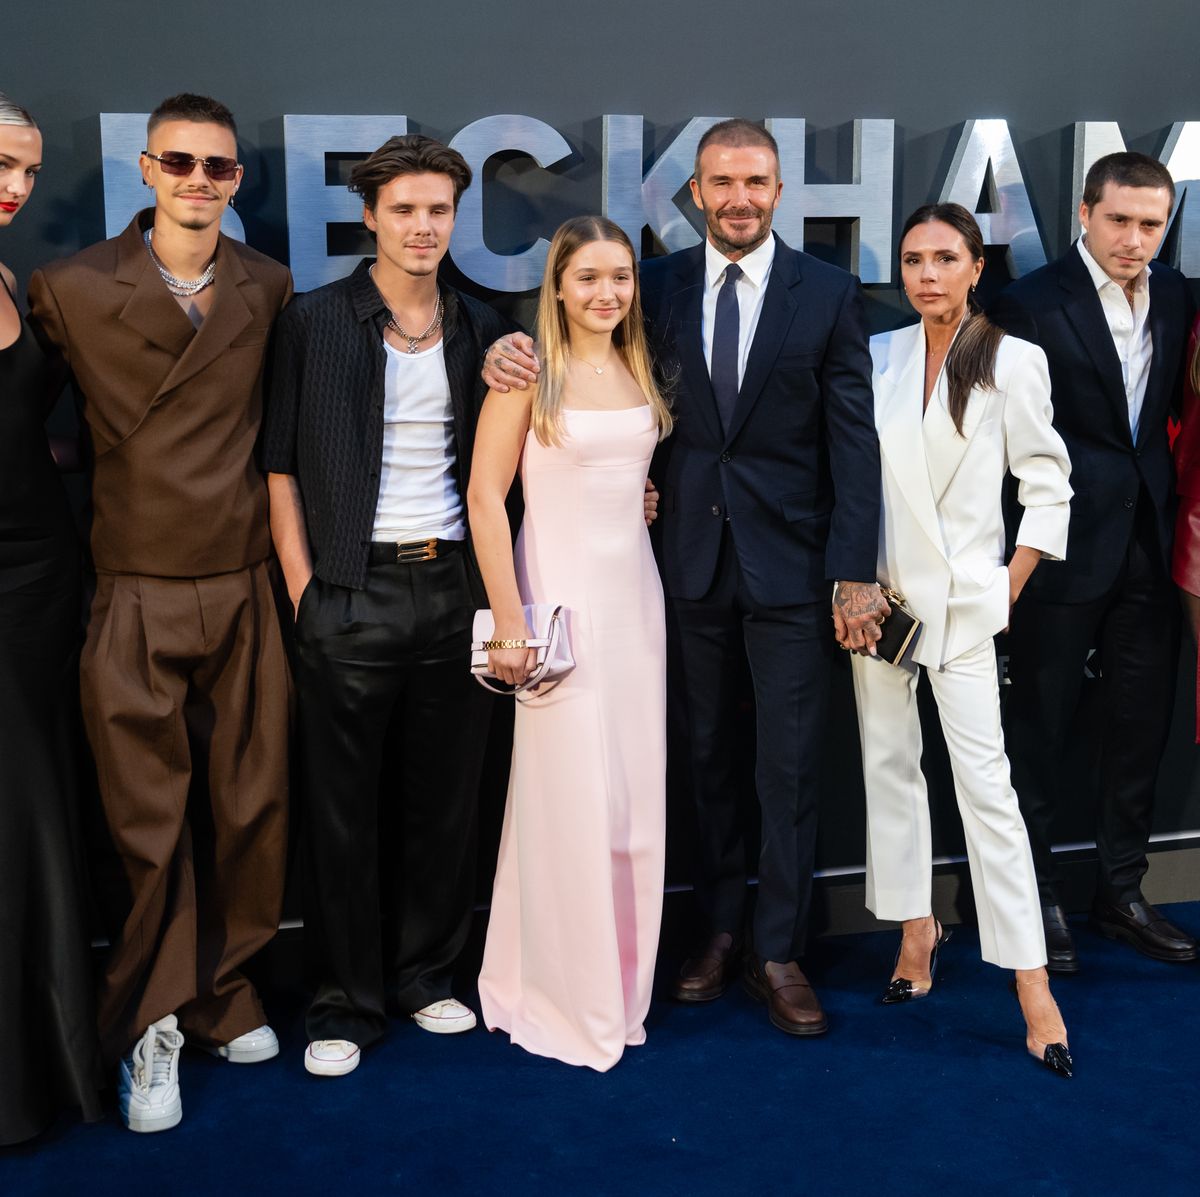 Victoria Beckham with David Beckham, Kids at Paris Fashion Week Debut